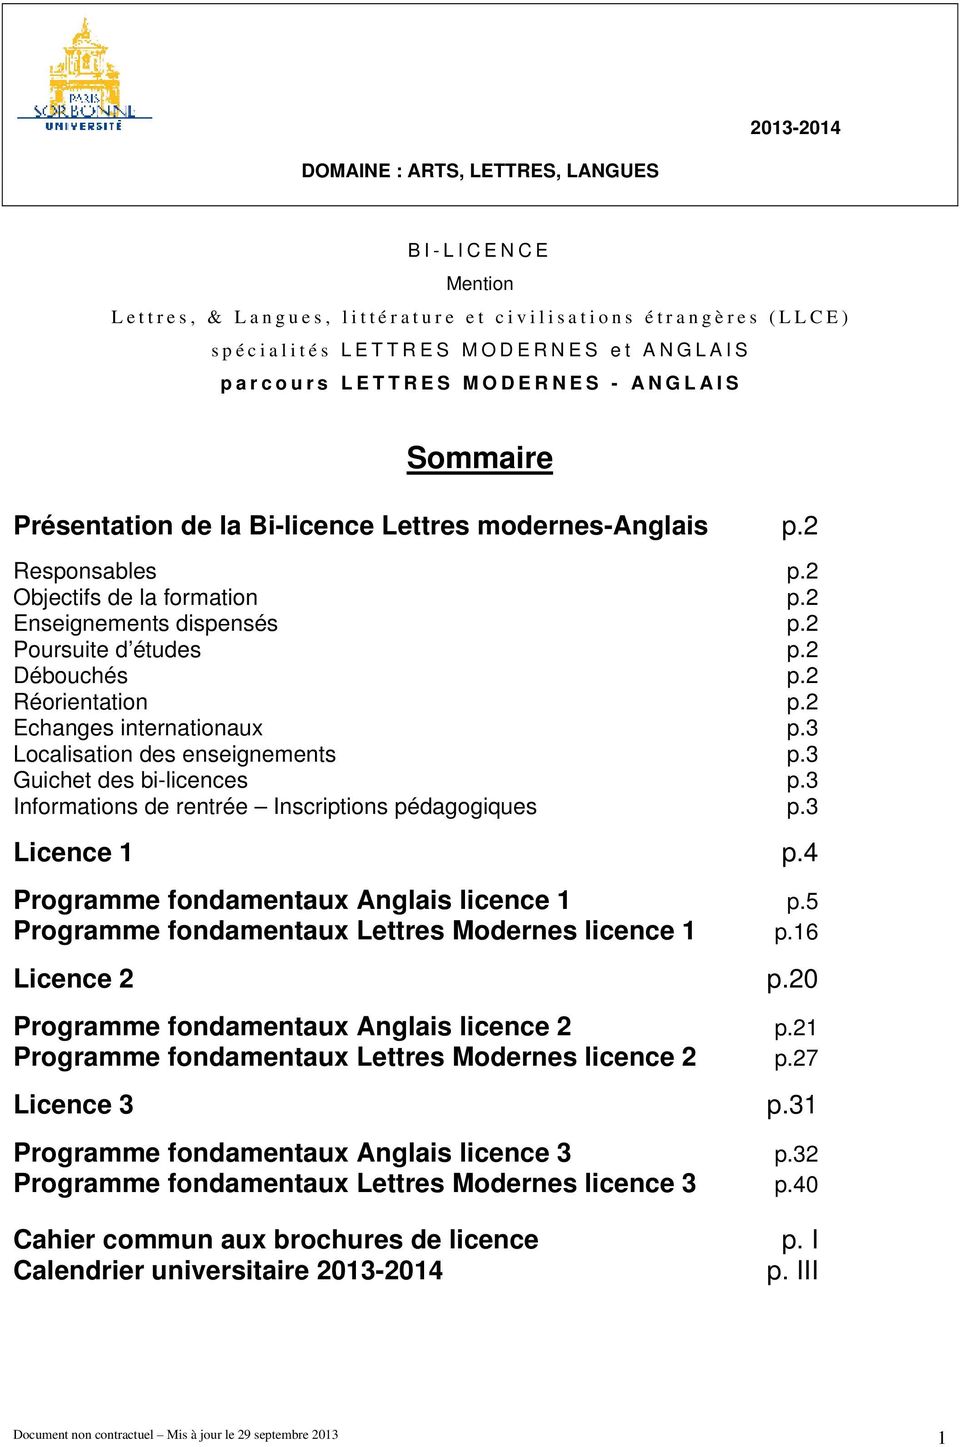 2 Réorientation p.2 Echanges internationaux p.3 Localisation des enseignements p.3 Guichet des bi-licences p.3 Informations de rentrée Inscriptions pédagogiques p.3 Licence 1 p.